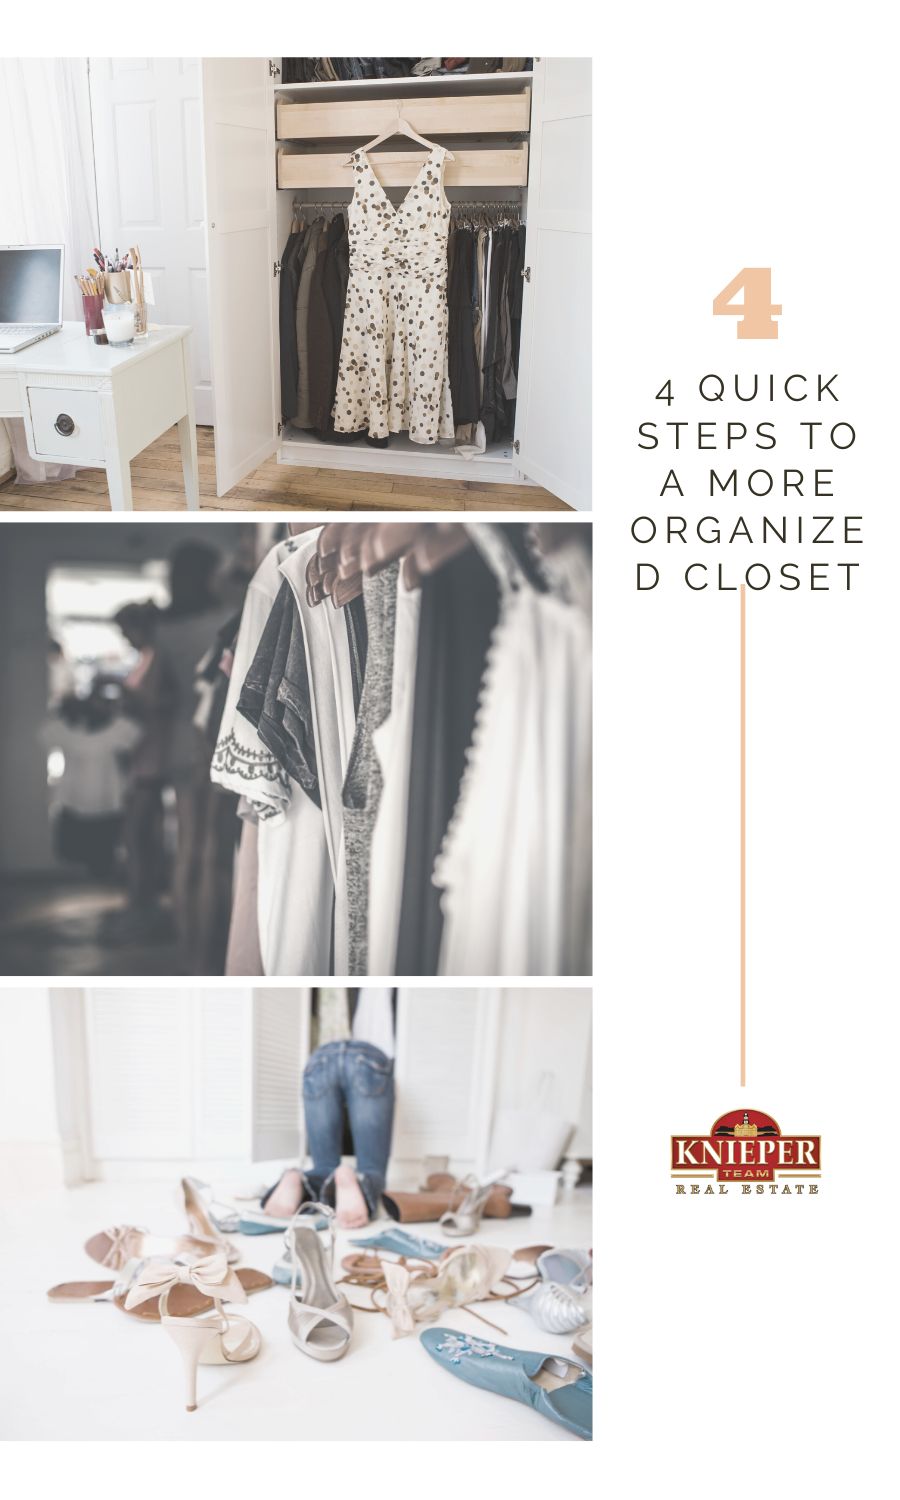 4 Quick Steps to a More Organized Closet